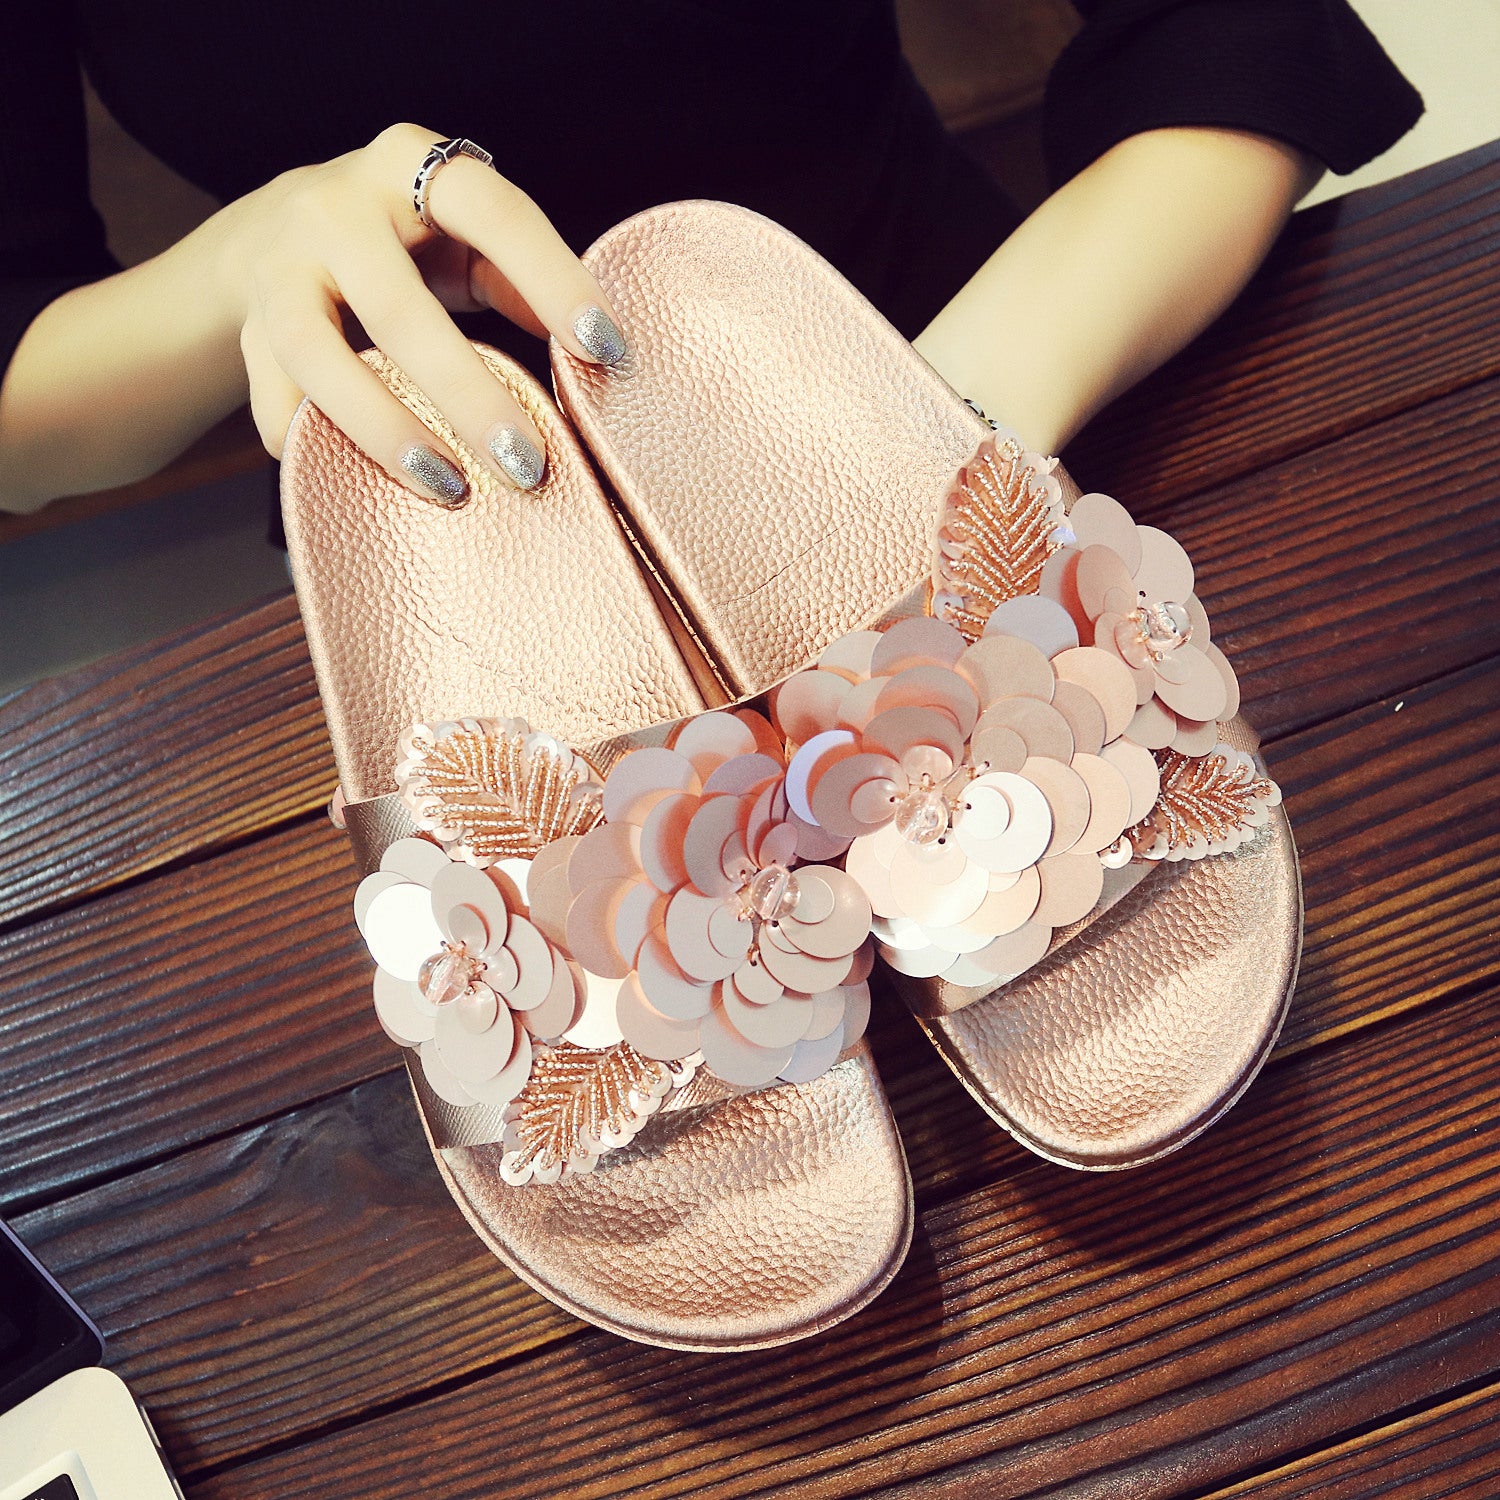 Papuci/slapi moderni pentru femei, decorati cu paiete si flori, din material pvc, sandale cu talpa joasa anti alunecare